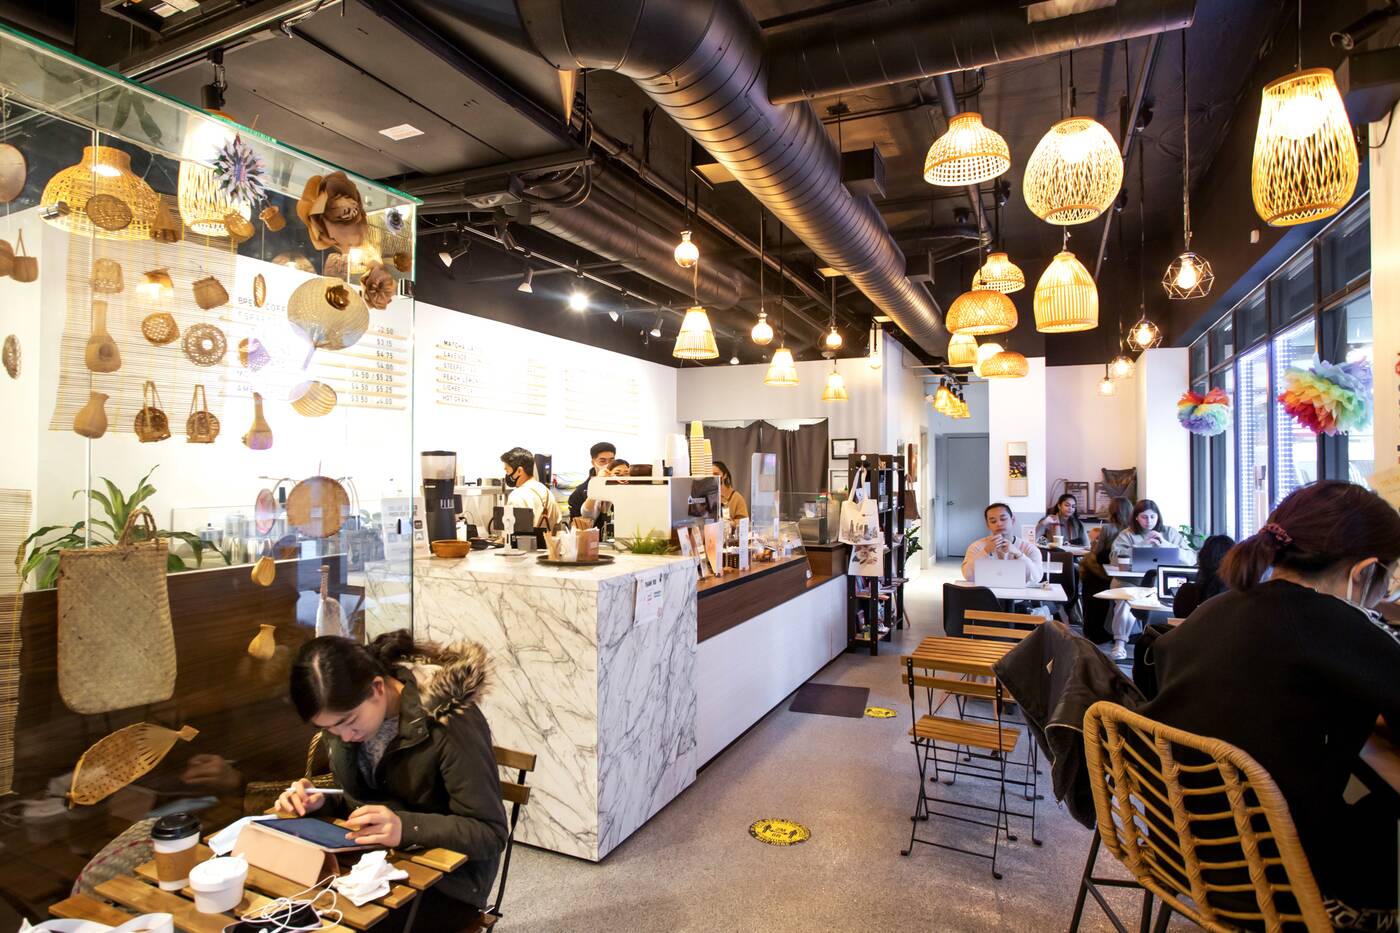 Oats Kafe Toronto